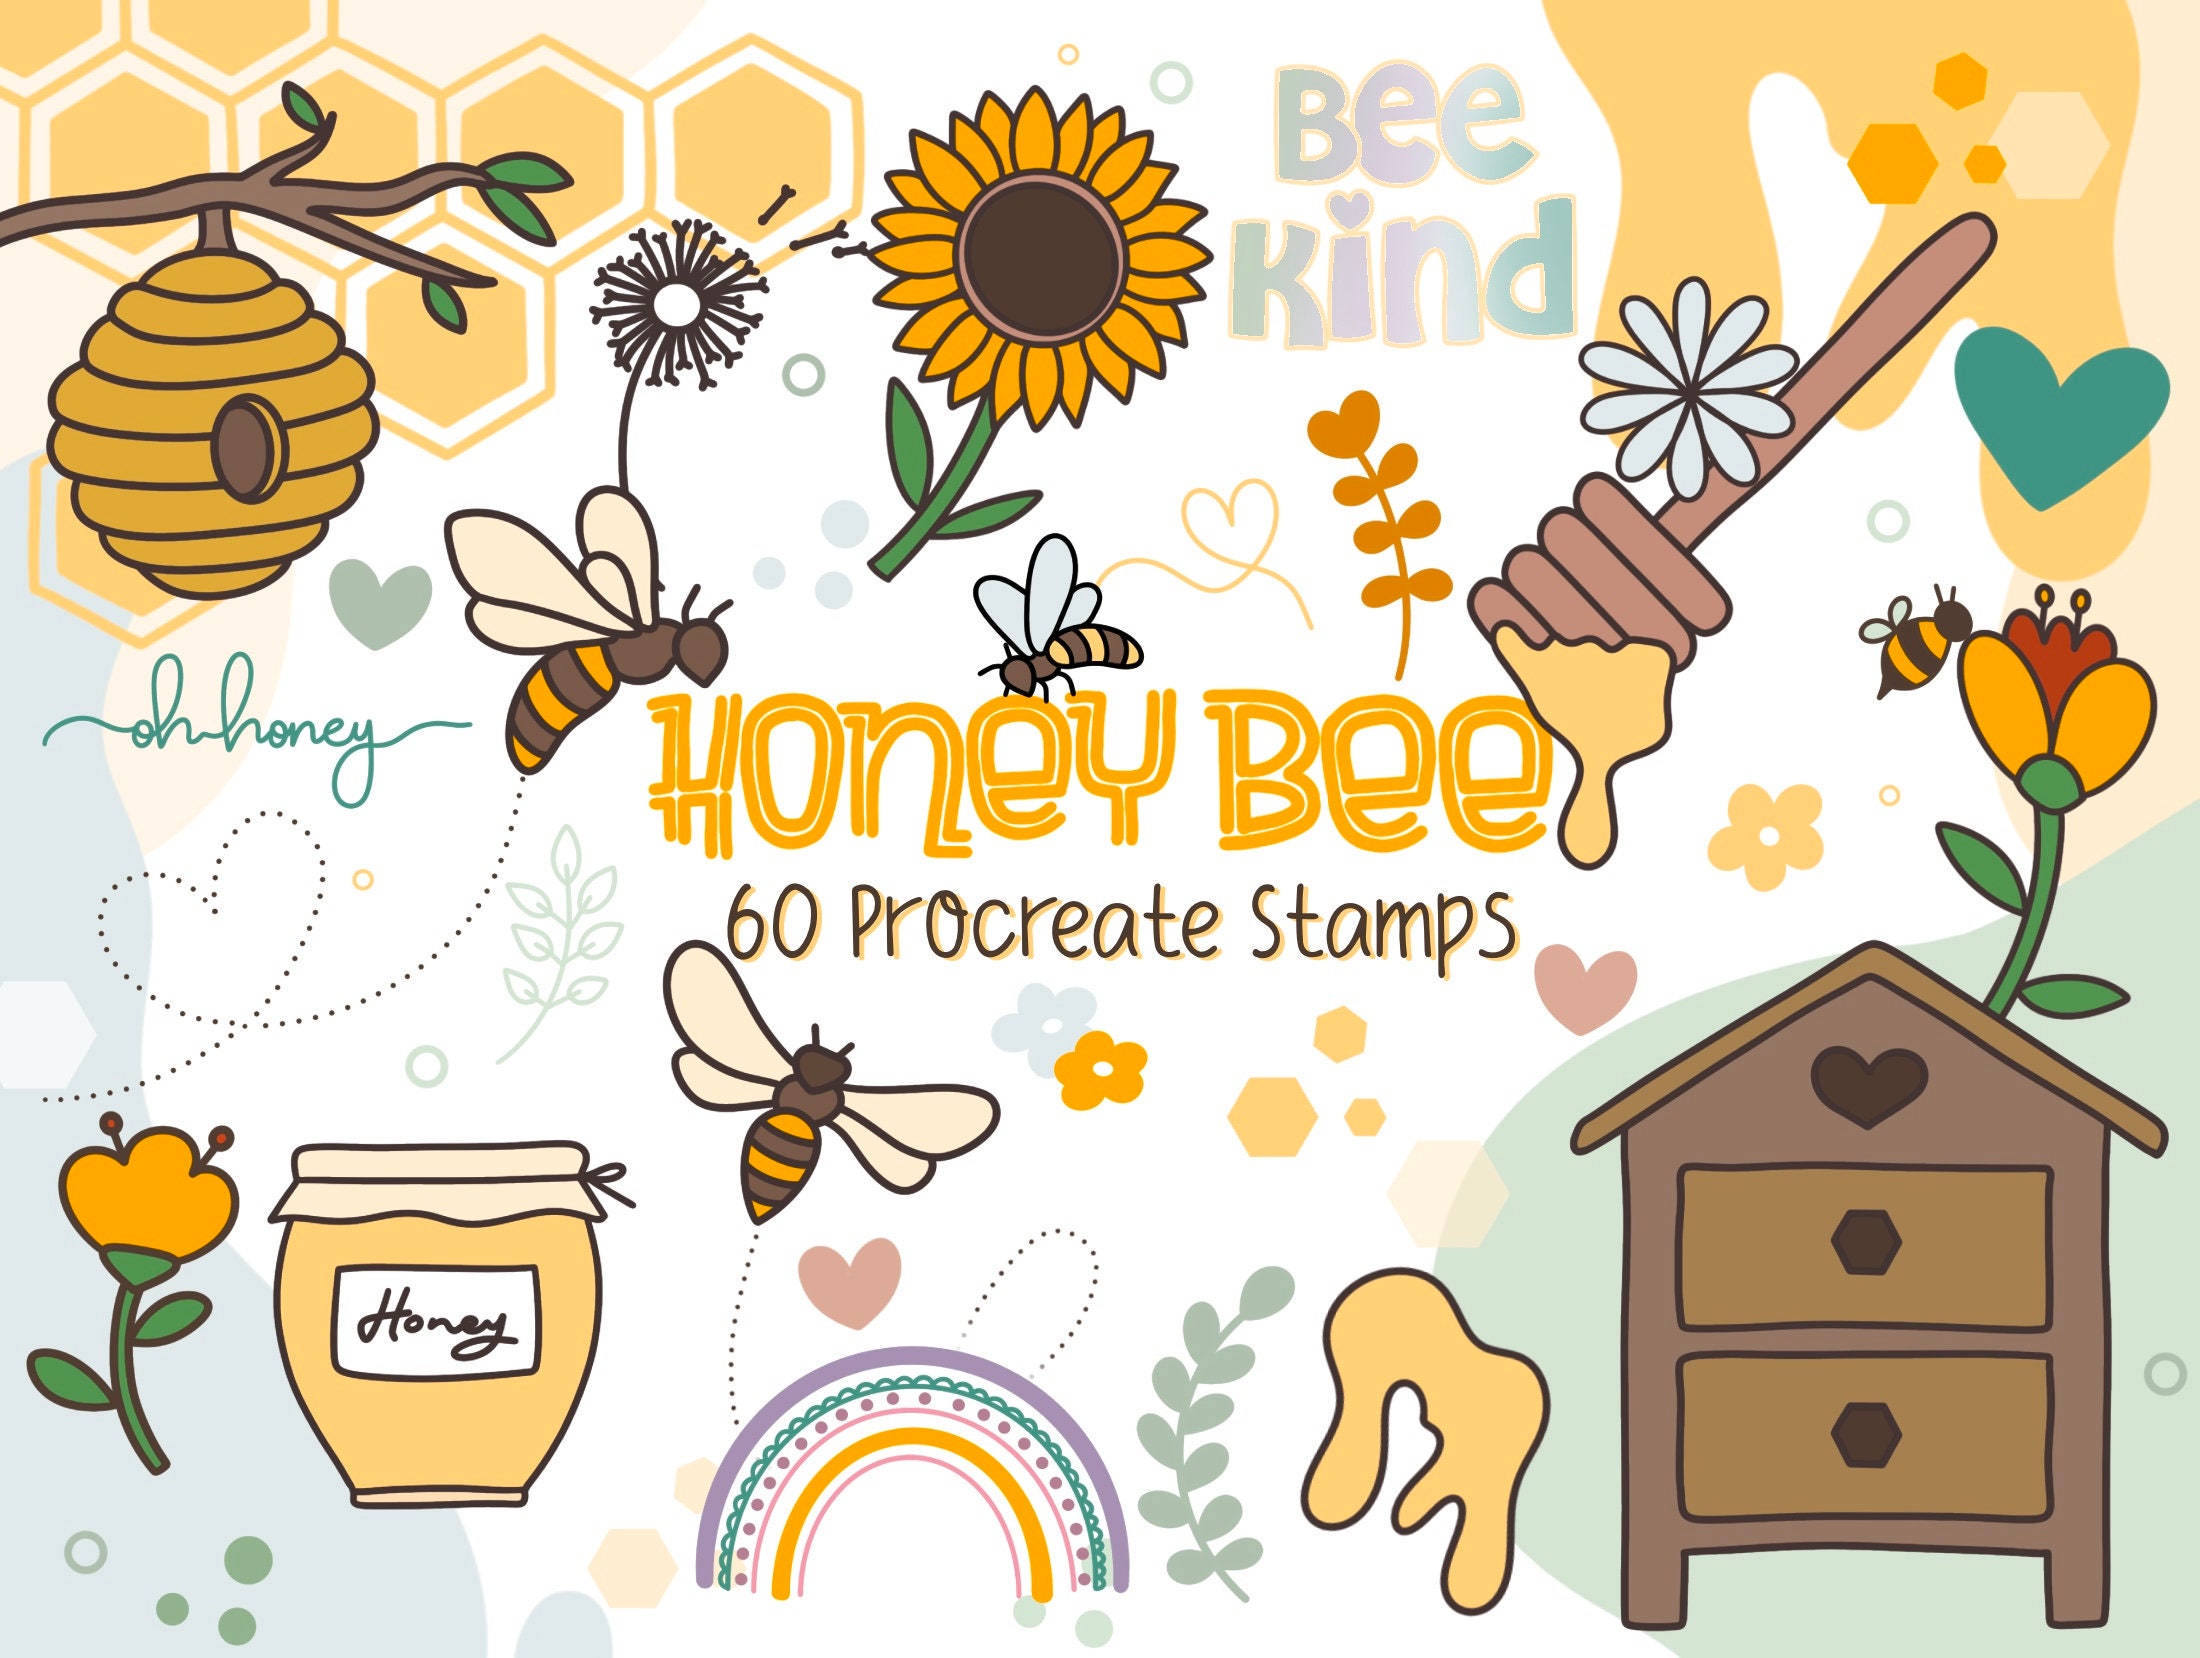 Bee RUBBER STAMP, Bumblebee Stamp, Honey Bee Stamp, Insect Stamp, Bee Hive  Stamp, Bee Lover Stamp, Bumble Bee Stamp, Bumblebee Top View